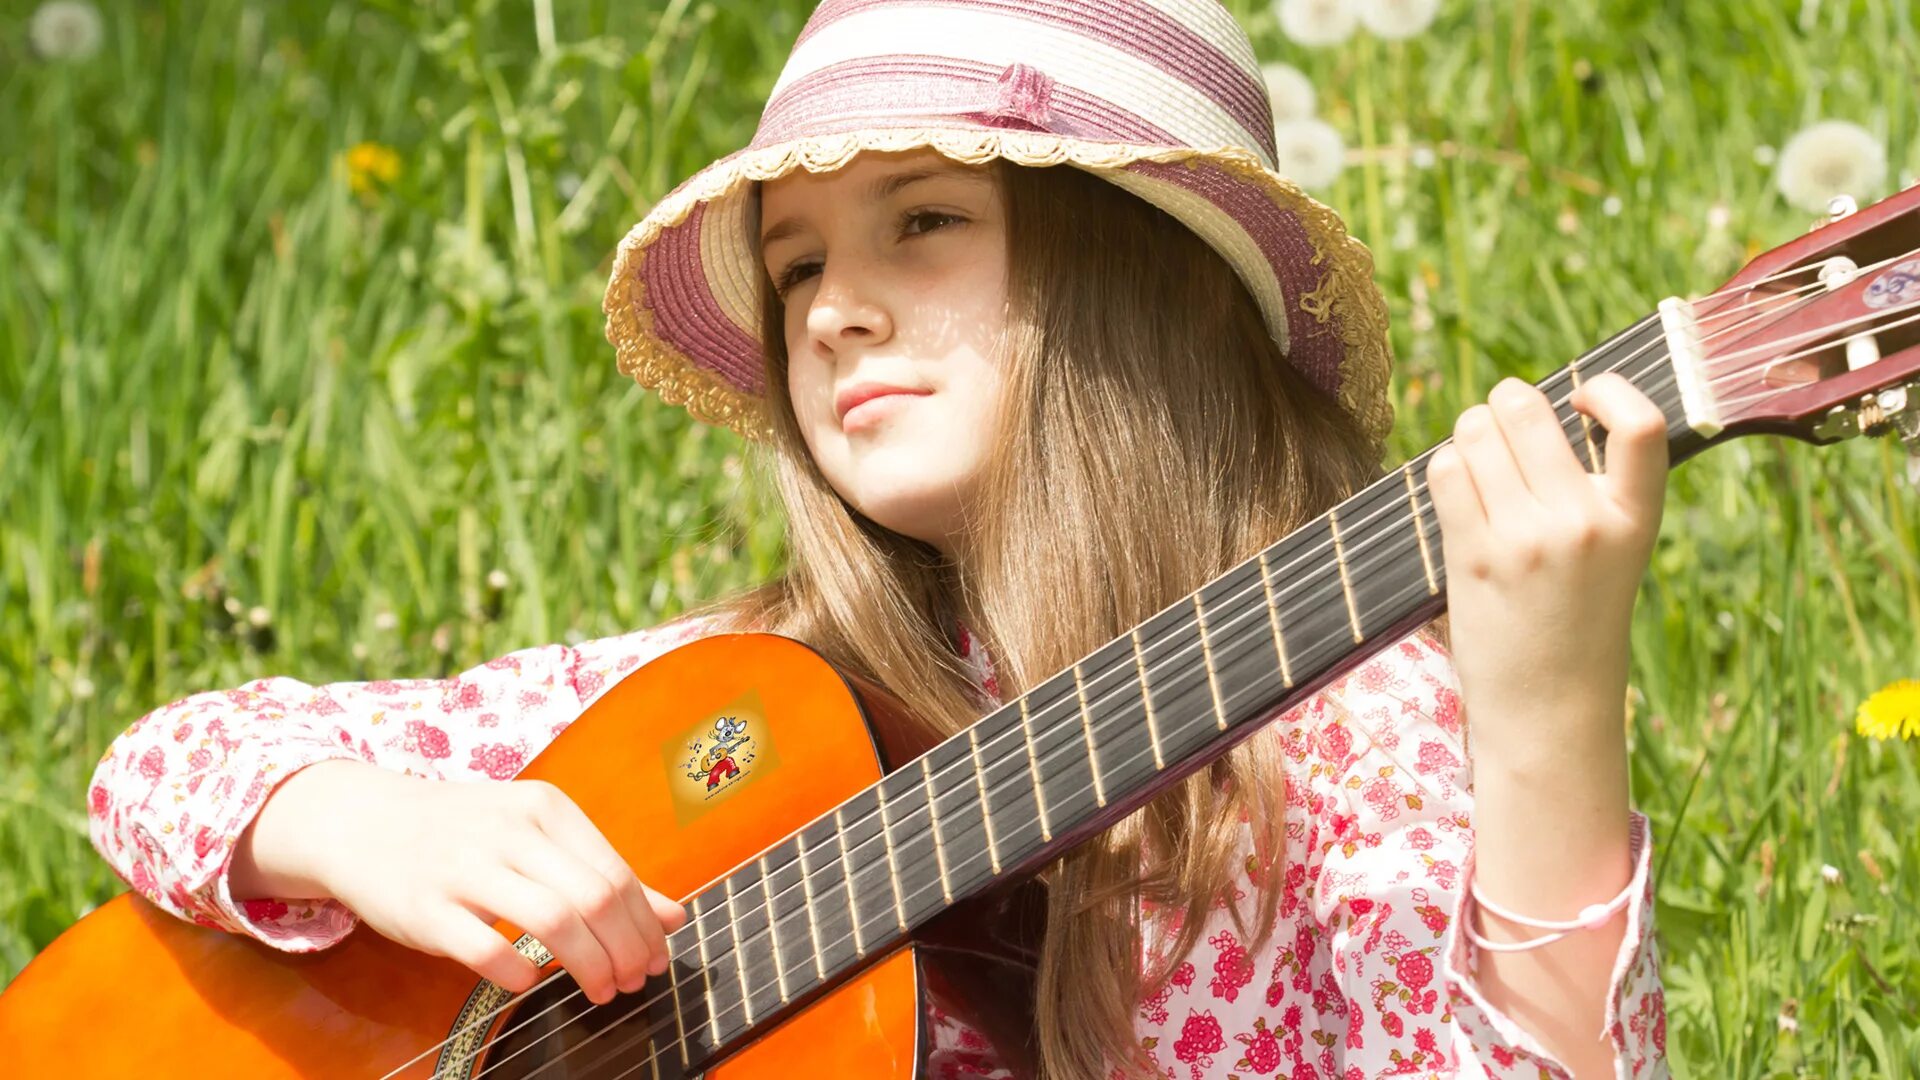 Гитара для детей. Подросток с гитарой. Девушка с гитарой в лесу. Детская фотосессия с гитарой на природе. Играть на гитаре молодая